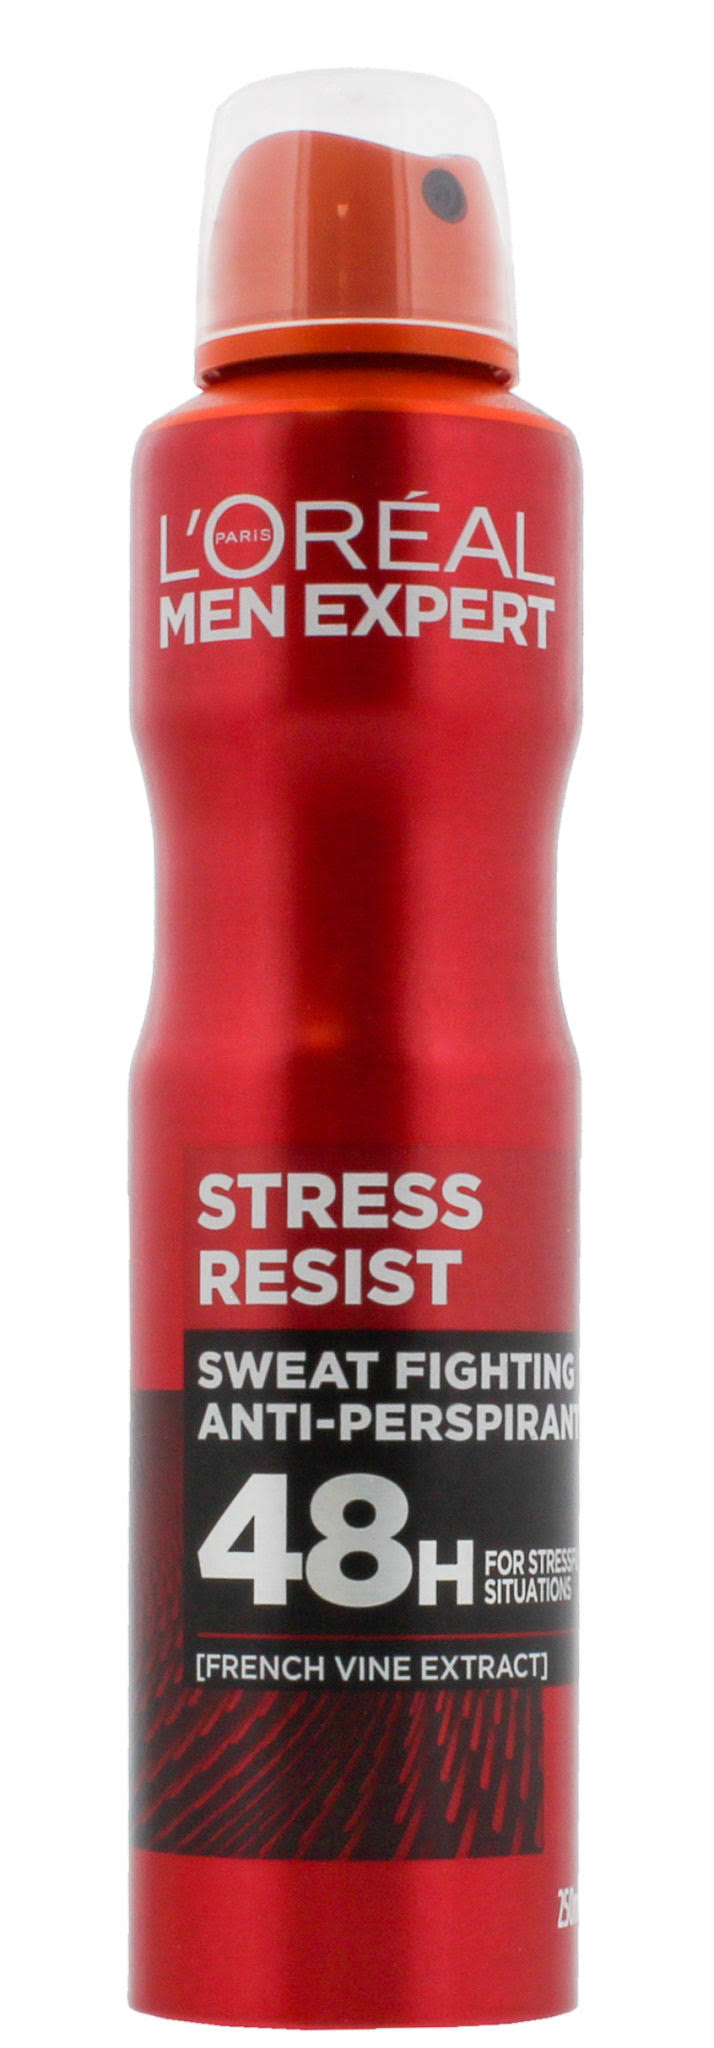 L'Oreal Men Expert Stress Resist Anti Perspirant Deodorant - 250ml